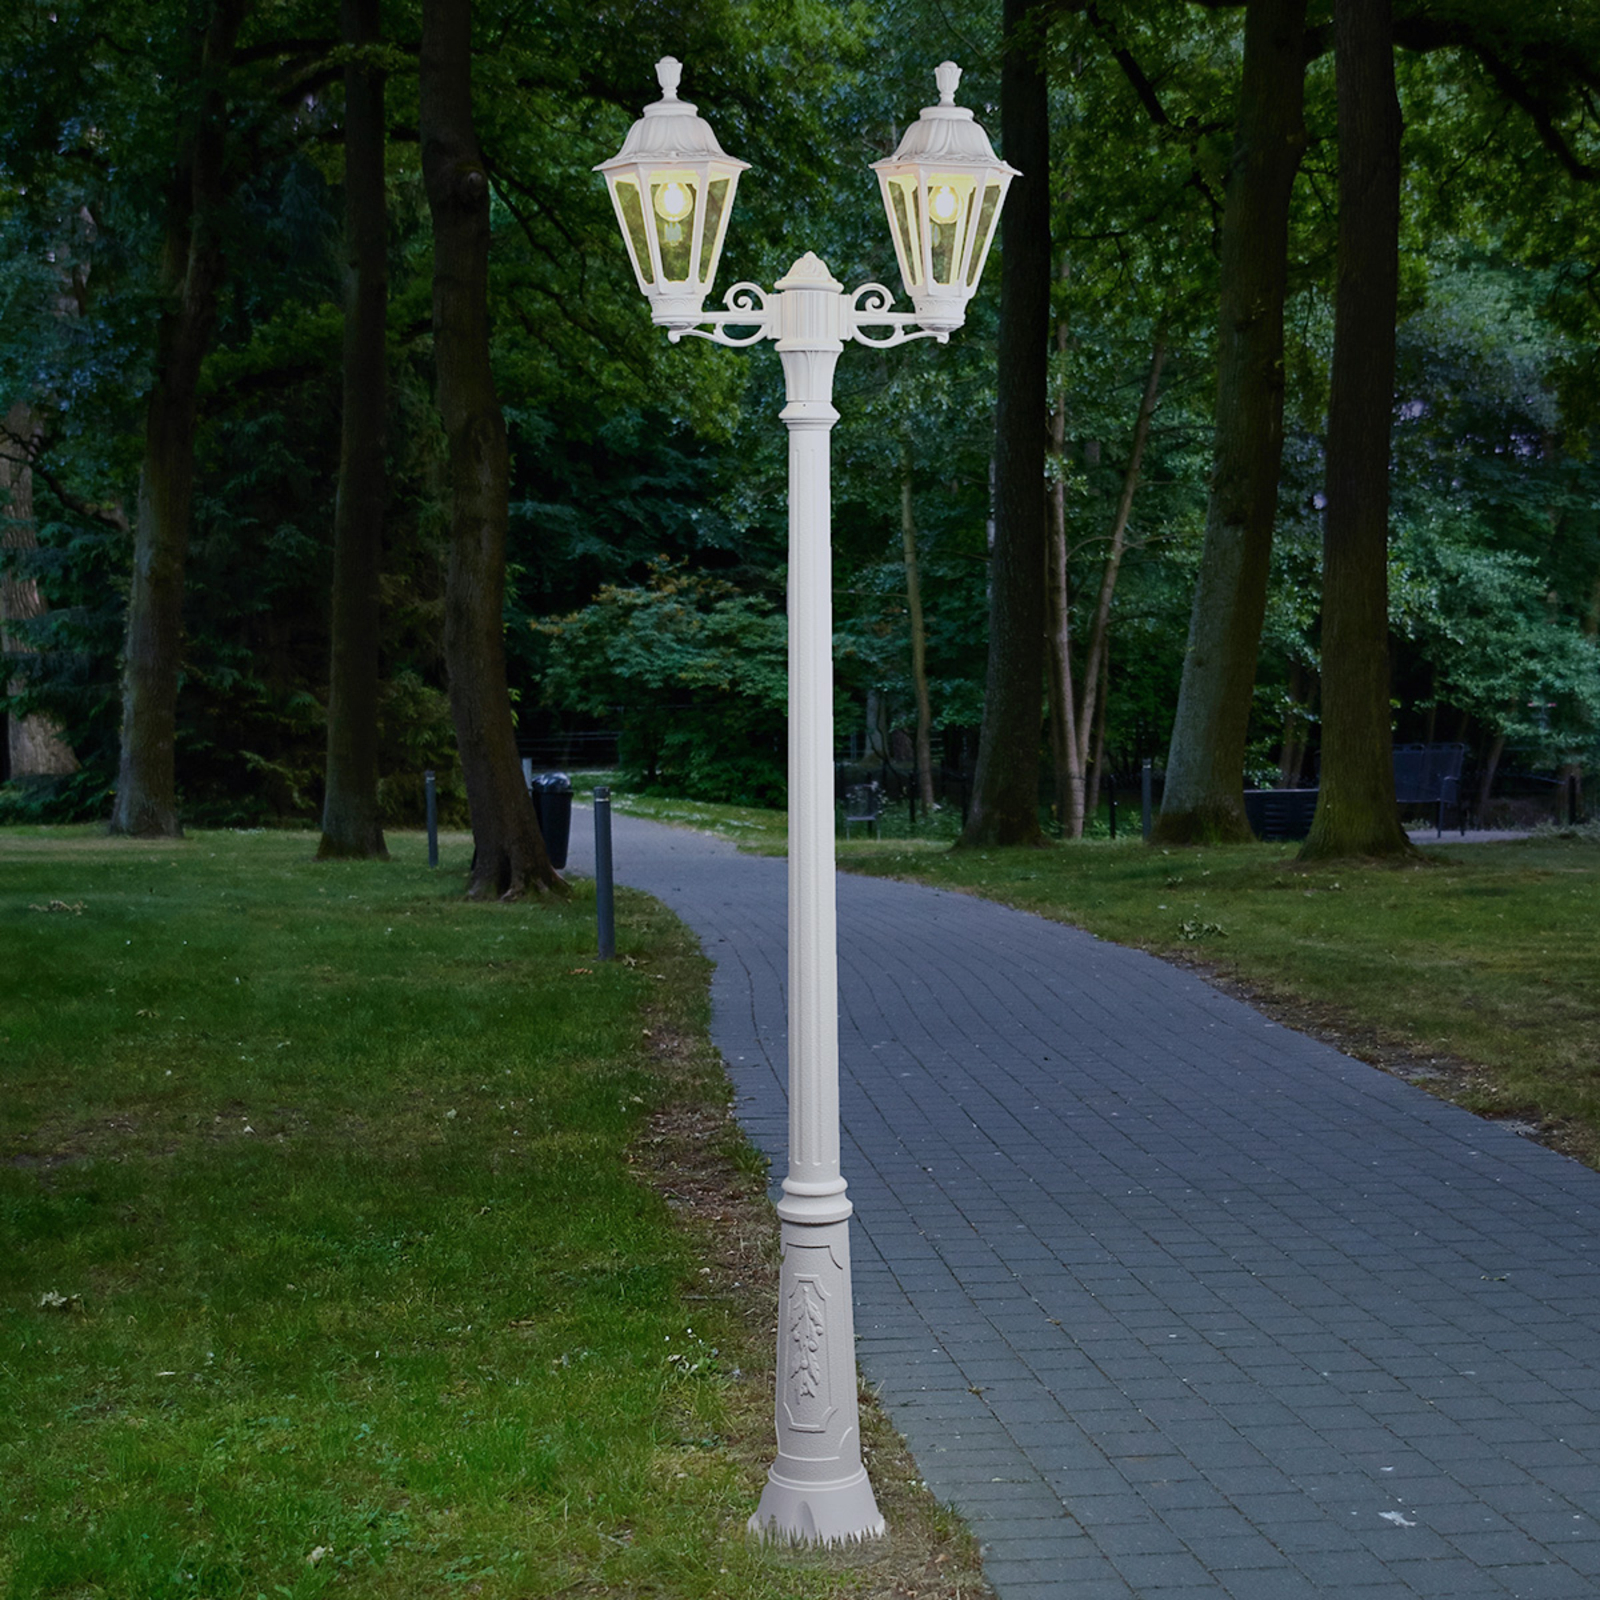 LED lantaarnpaal Artu Rut, 2-lamps, E27, wit